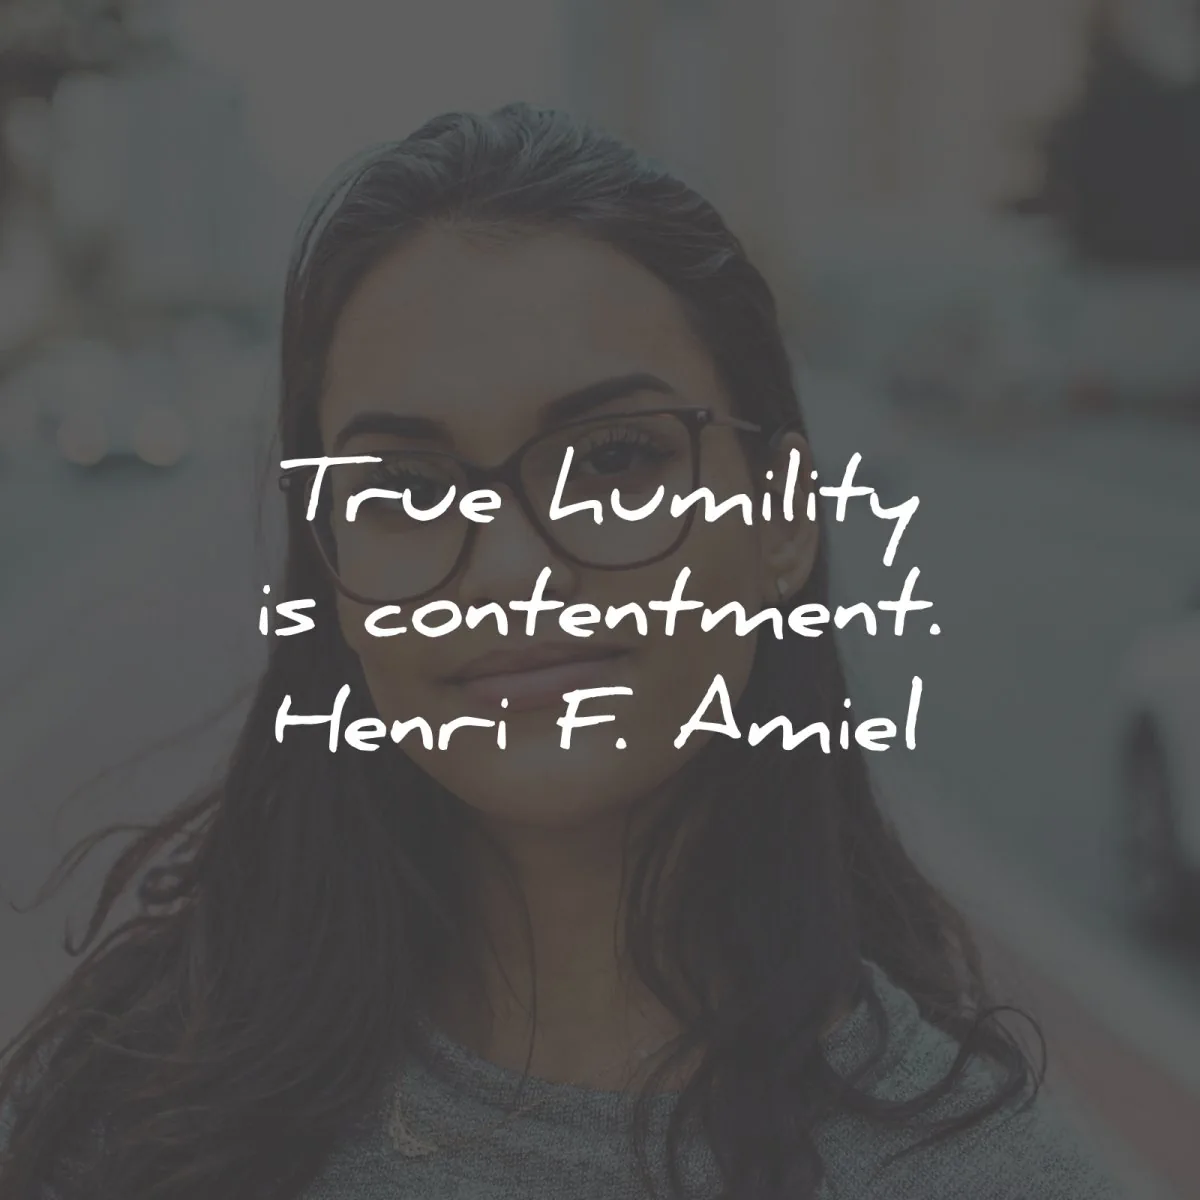 humility quotes true contentment henri amiel wisdom